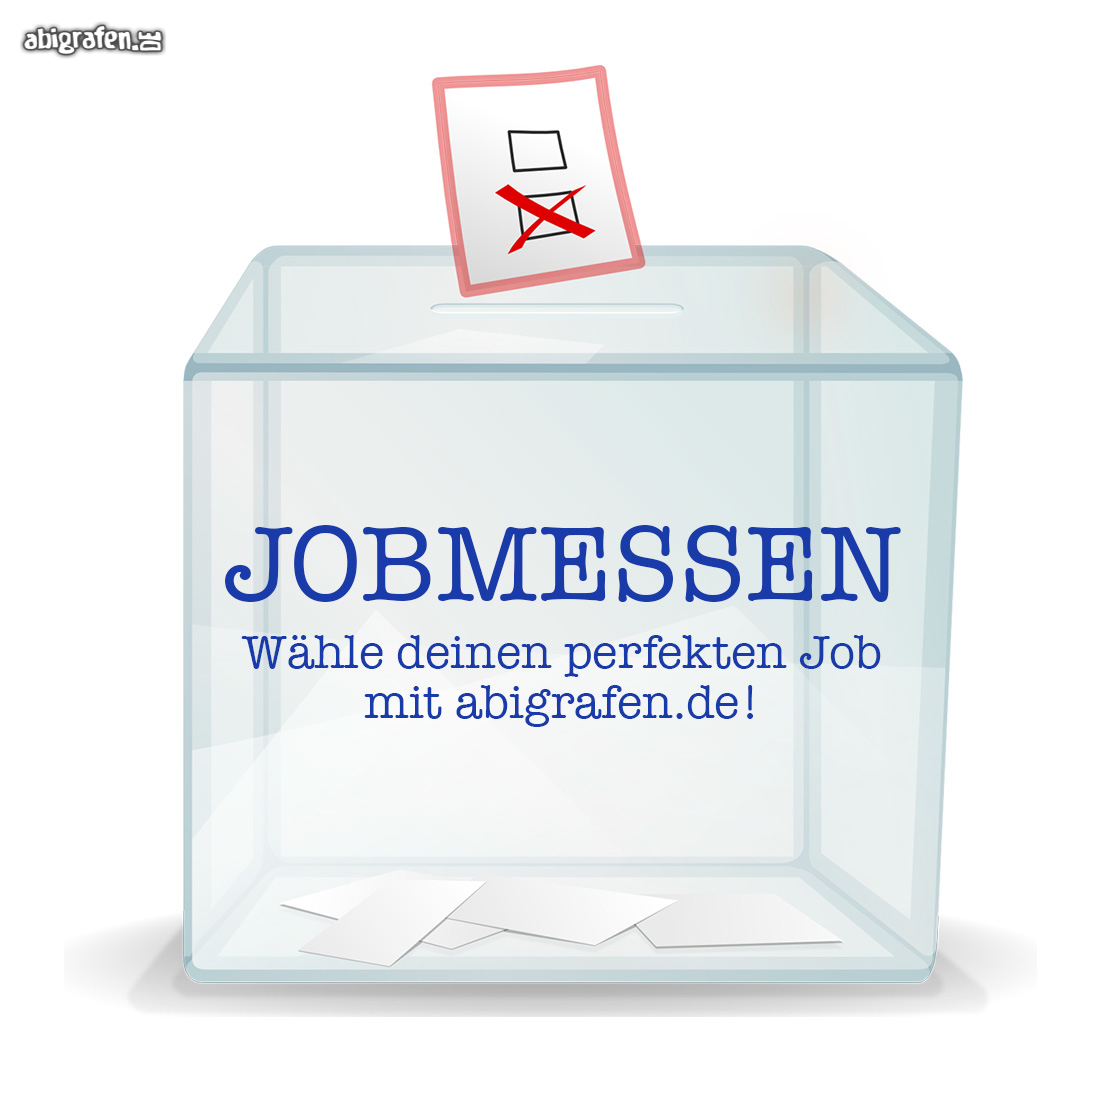 abigrafen.de stellt euch die neusten Jobmessen im November 2021 vor!